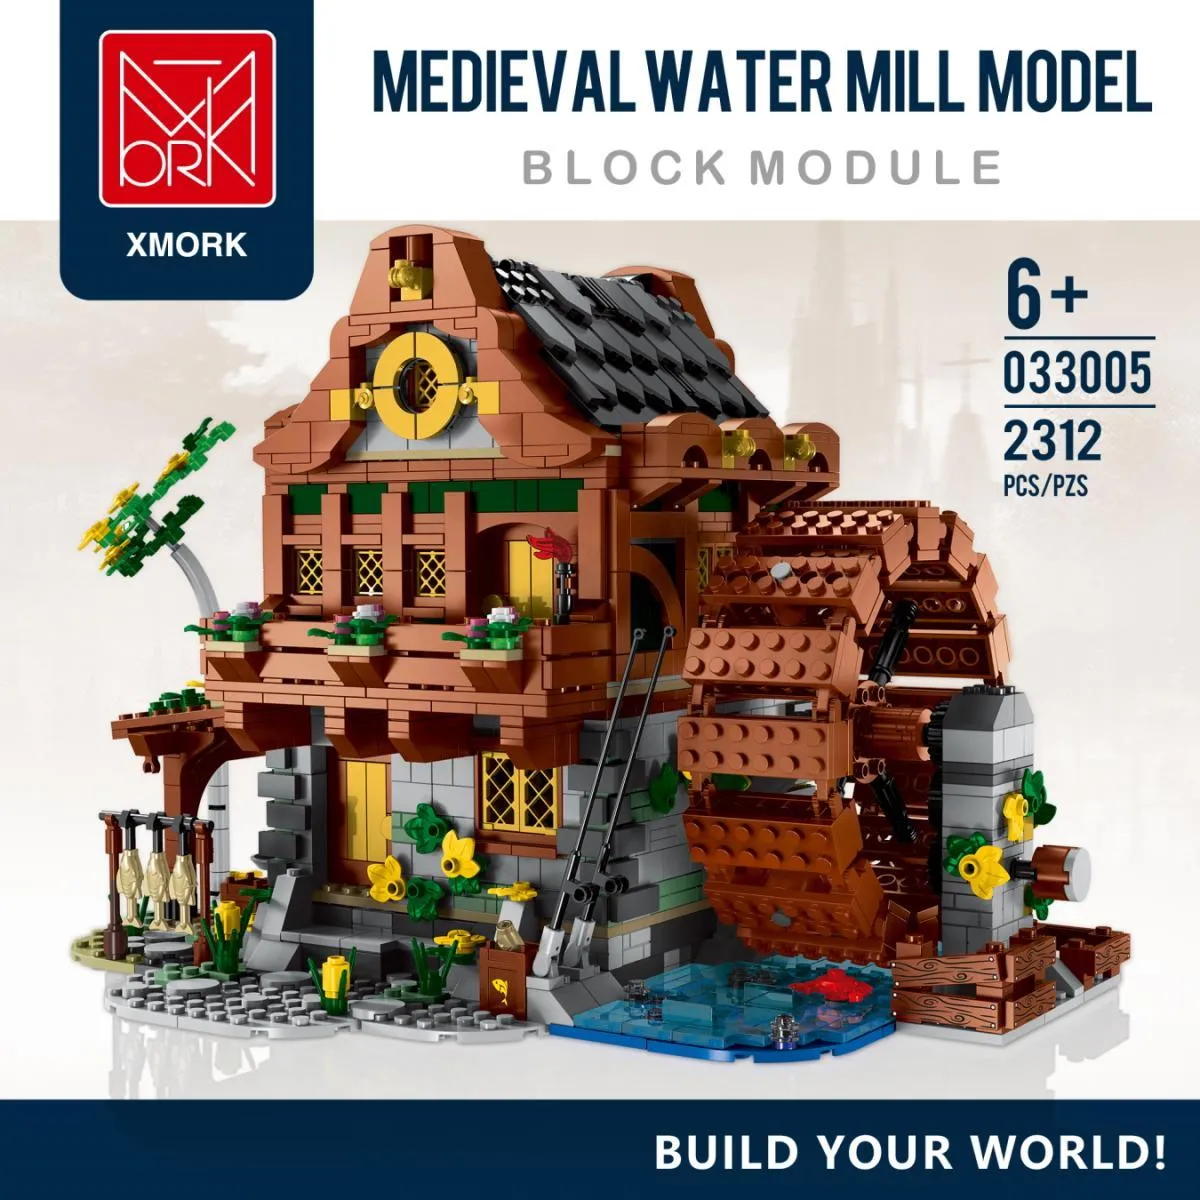 Mork - Mittelalterliche Wassermühle | Set 033005